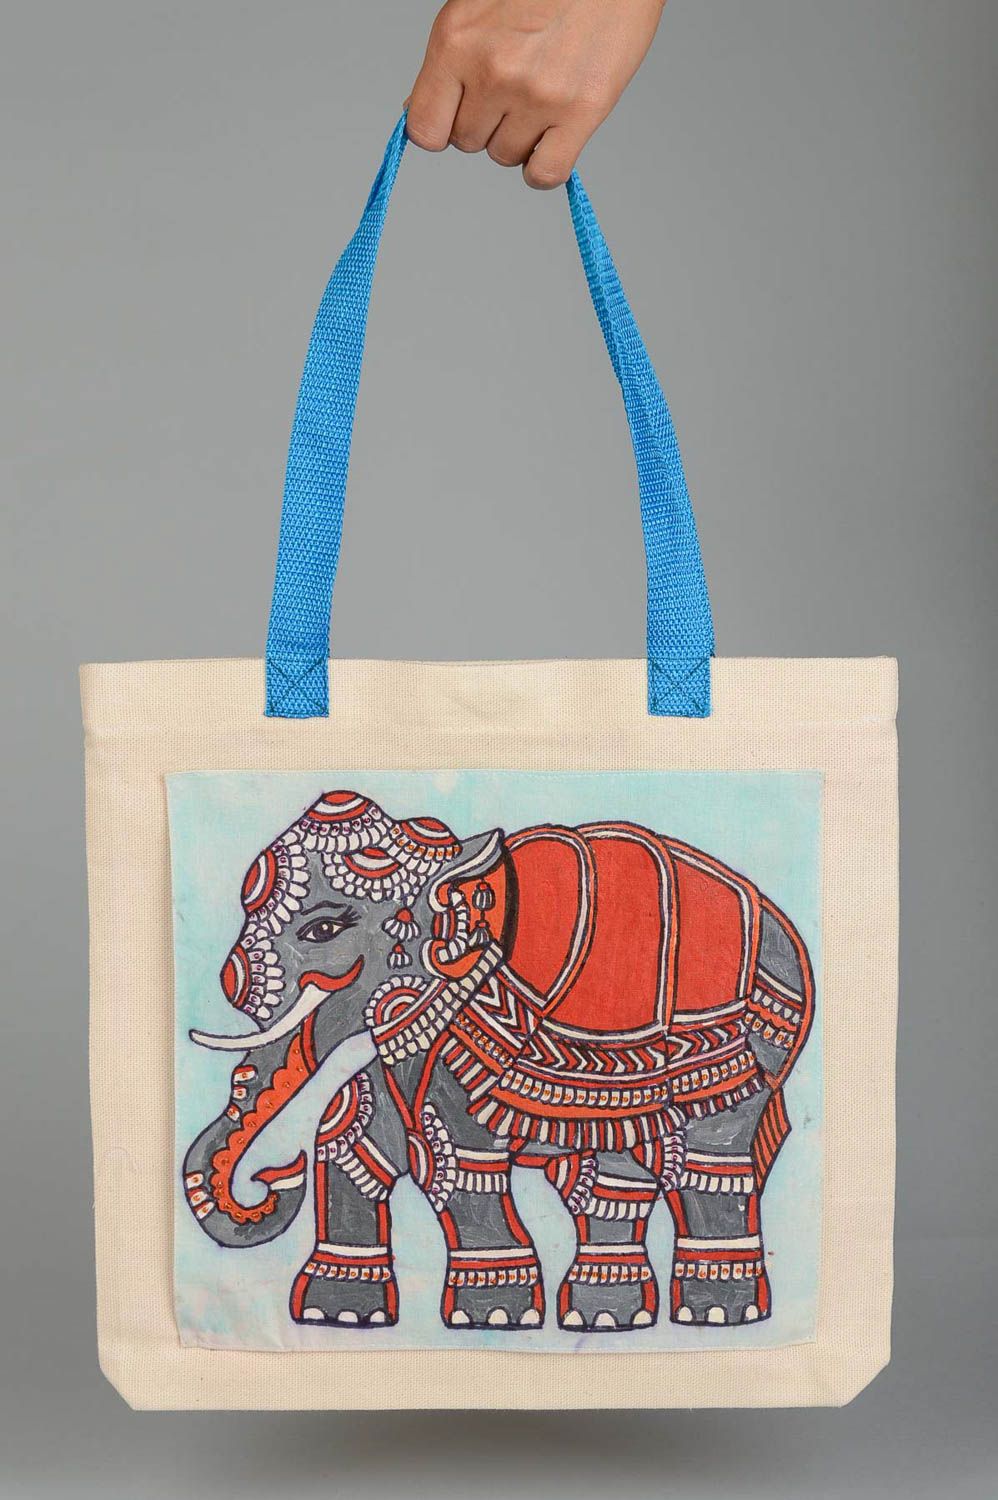 Сумка ручной работы сумка с рисунком слона яркая расписная женская сумка фото 5